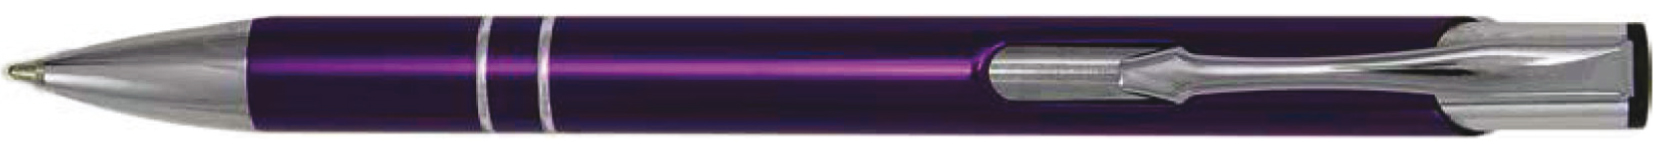 BestPen - penna promozionale in metallo con incisione C-19